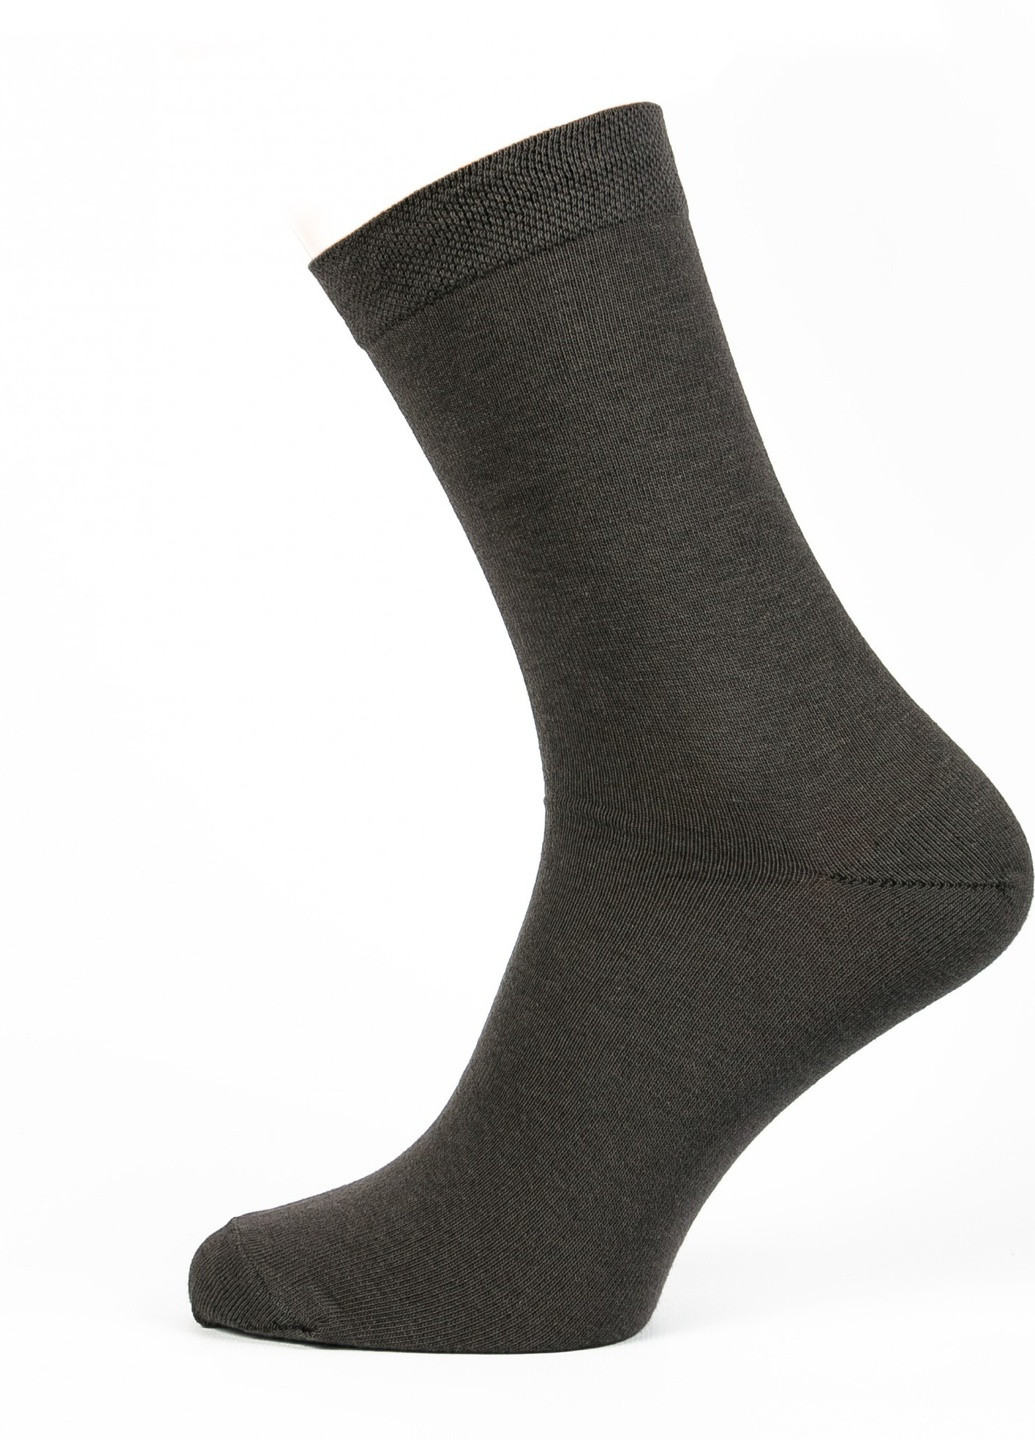 Шкарпетки чоловічі ТМ "Нова пара" 401 високі НОВА ПАРА висока модель (257062016)